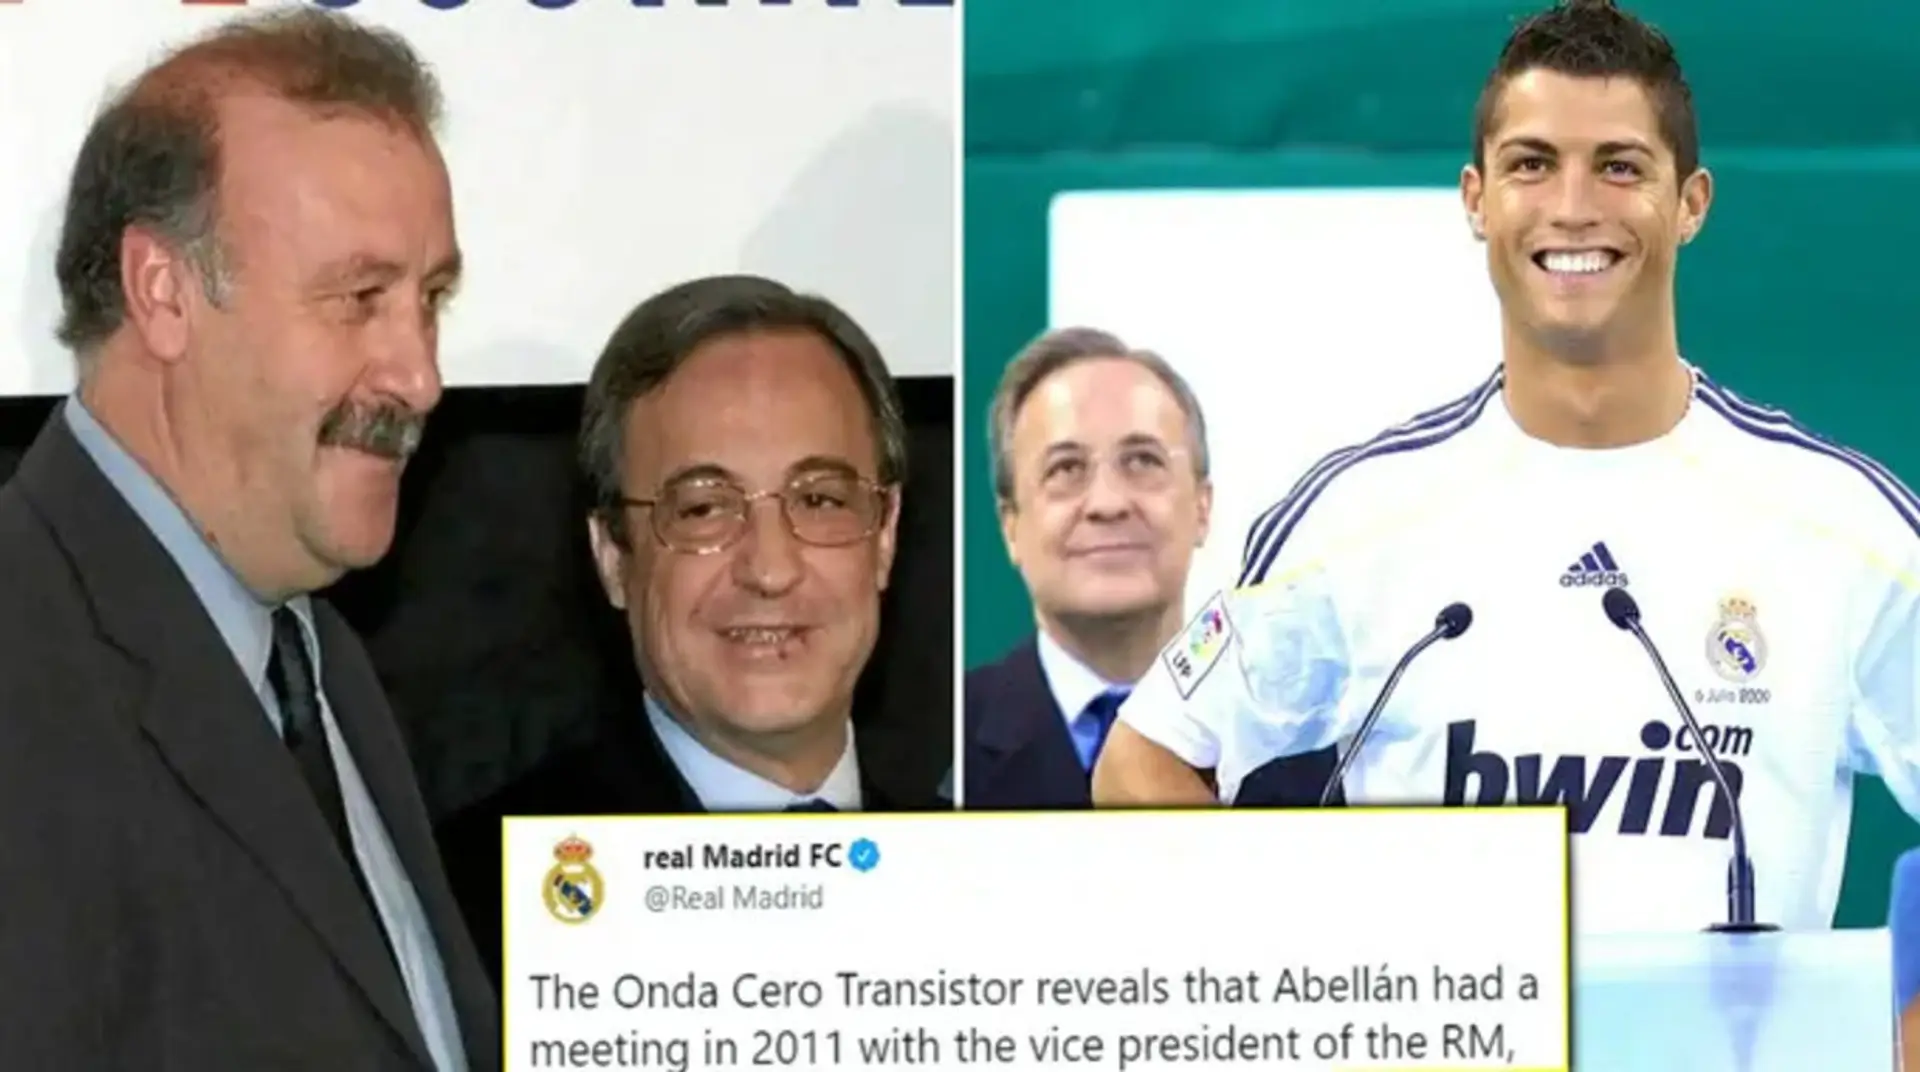 El Real Madrid prácticamente confirma que el chantajista exigió 10 millones de euros para eliminar los audios filtrados de Florentino